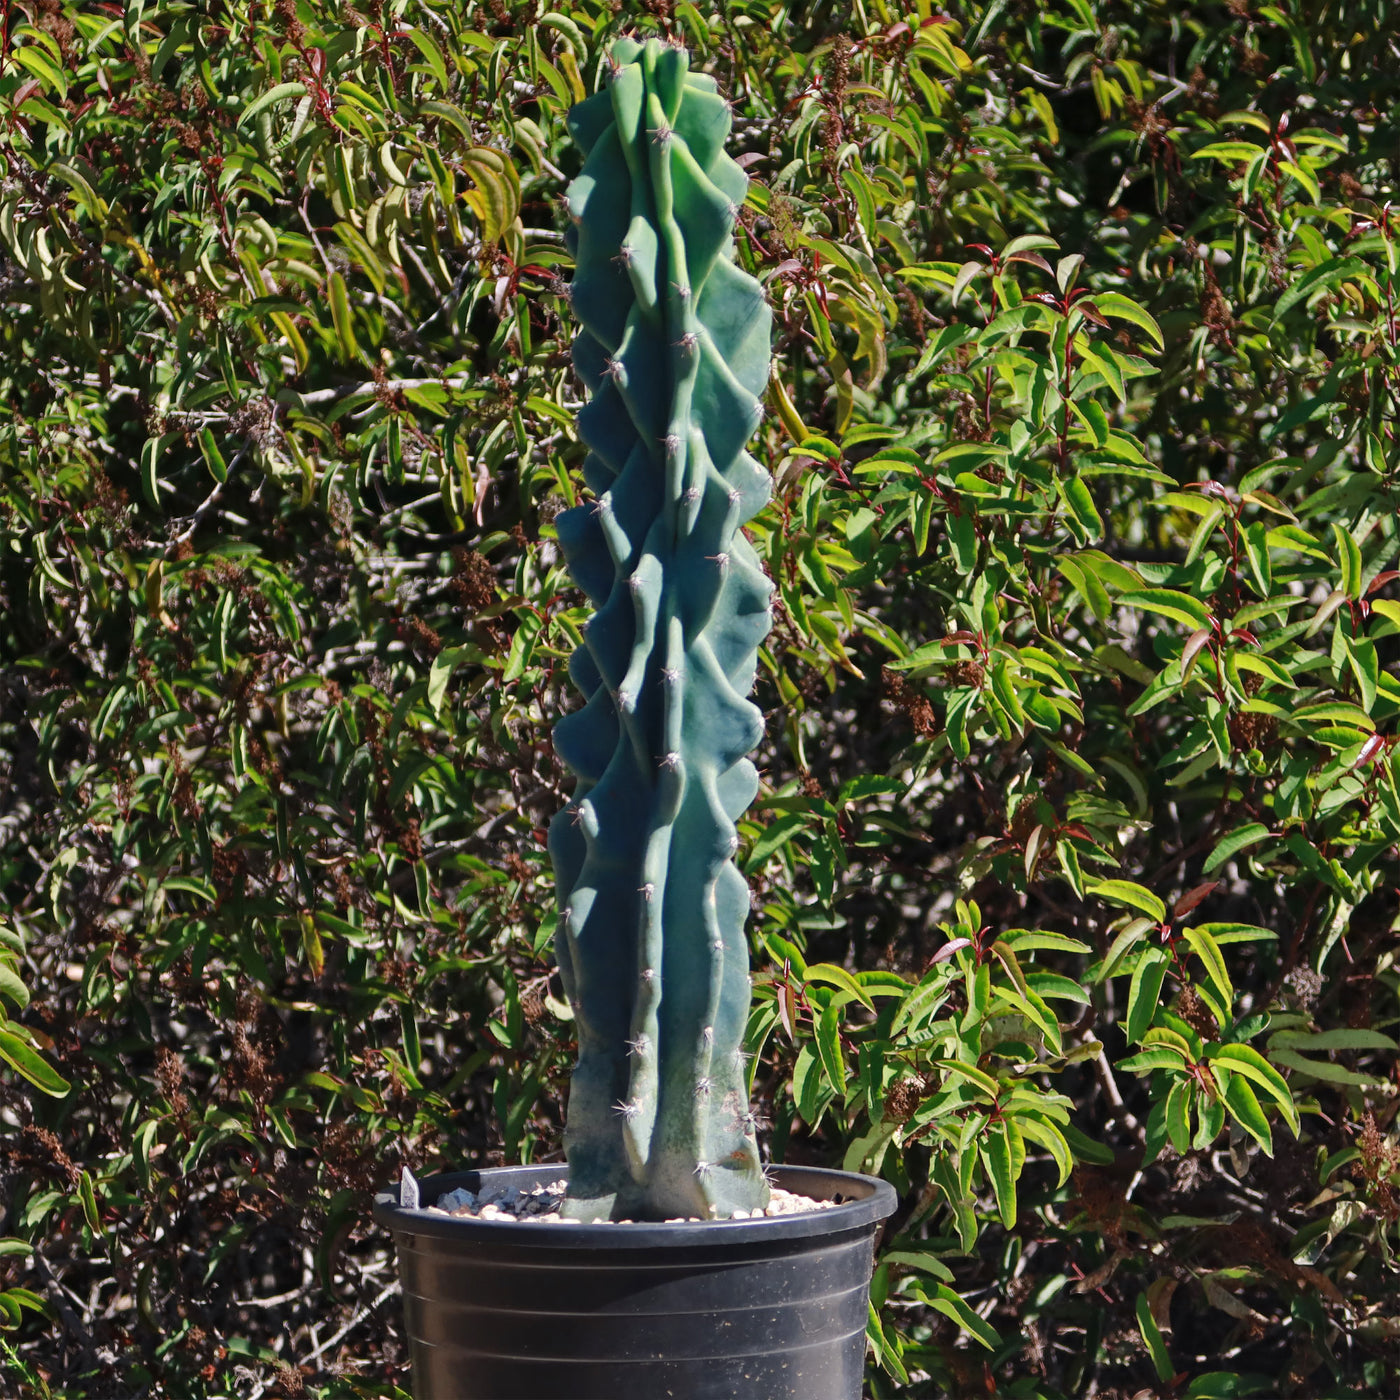 Monstrose Apple Cactus 'Cereus peruvianus monstrose'